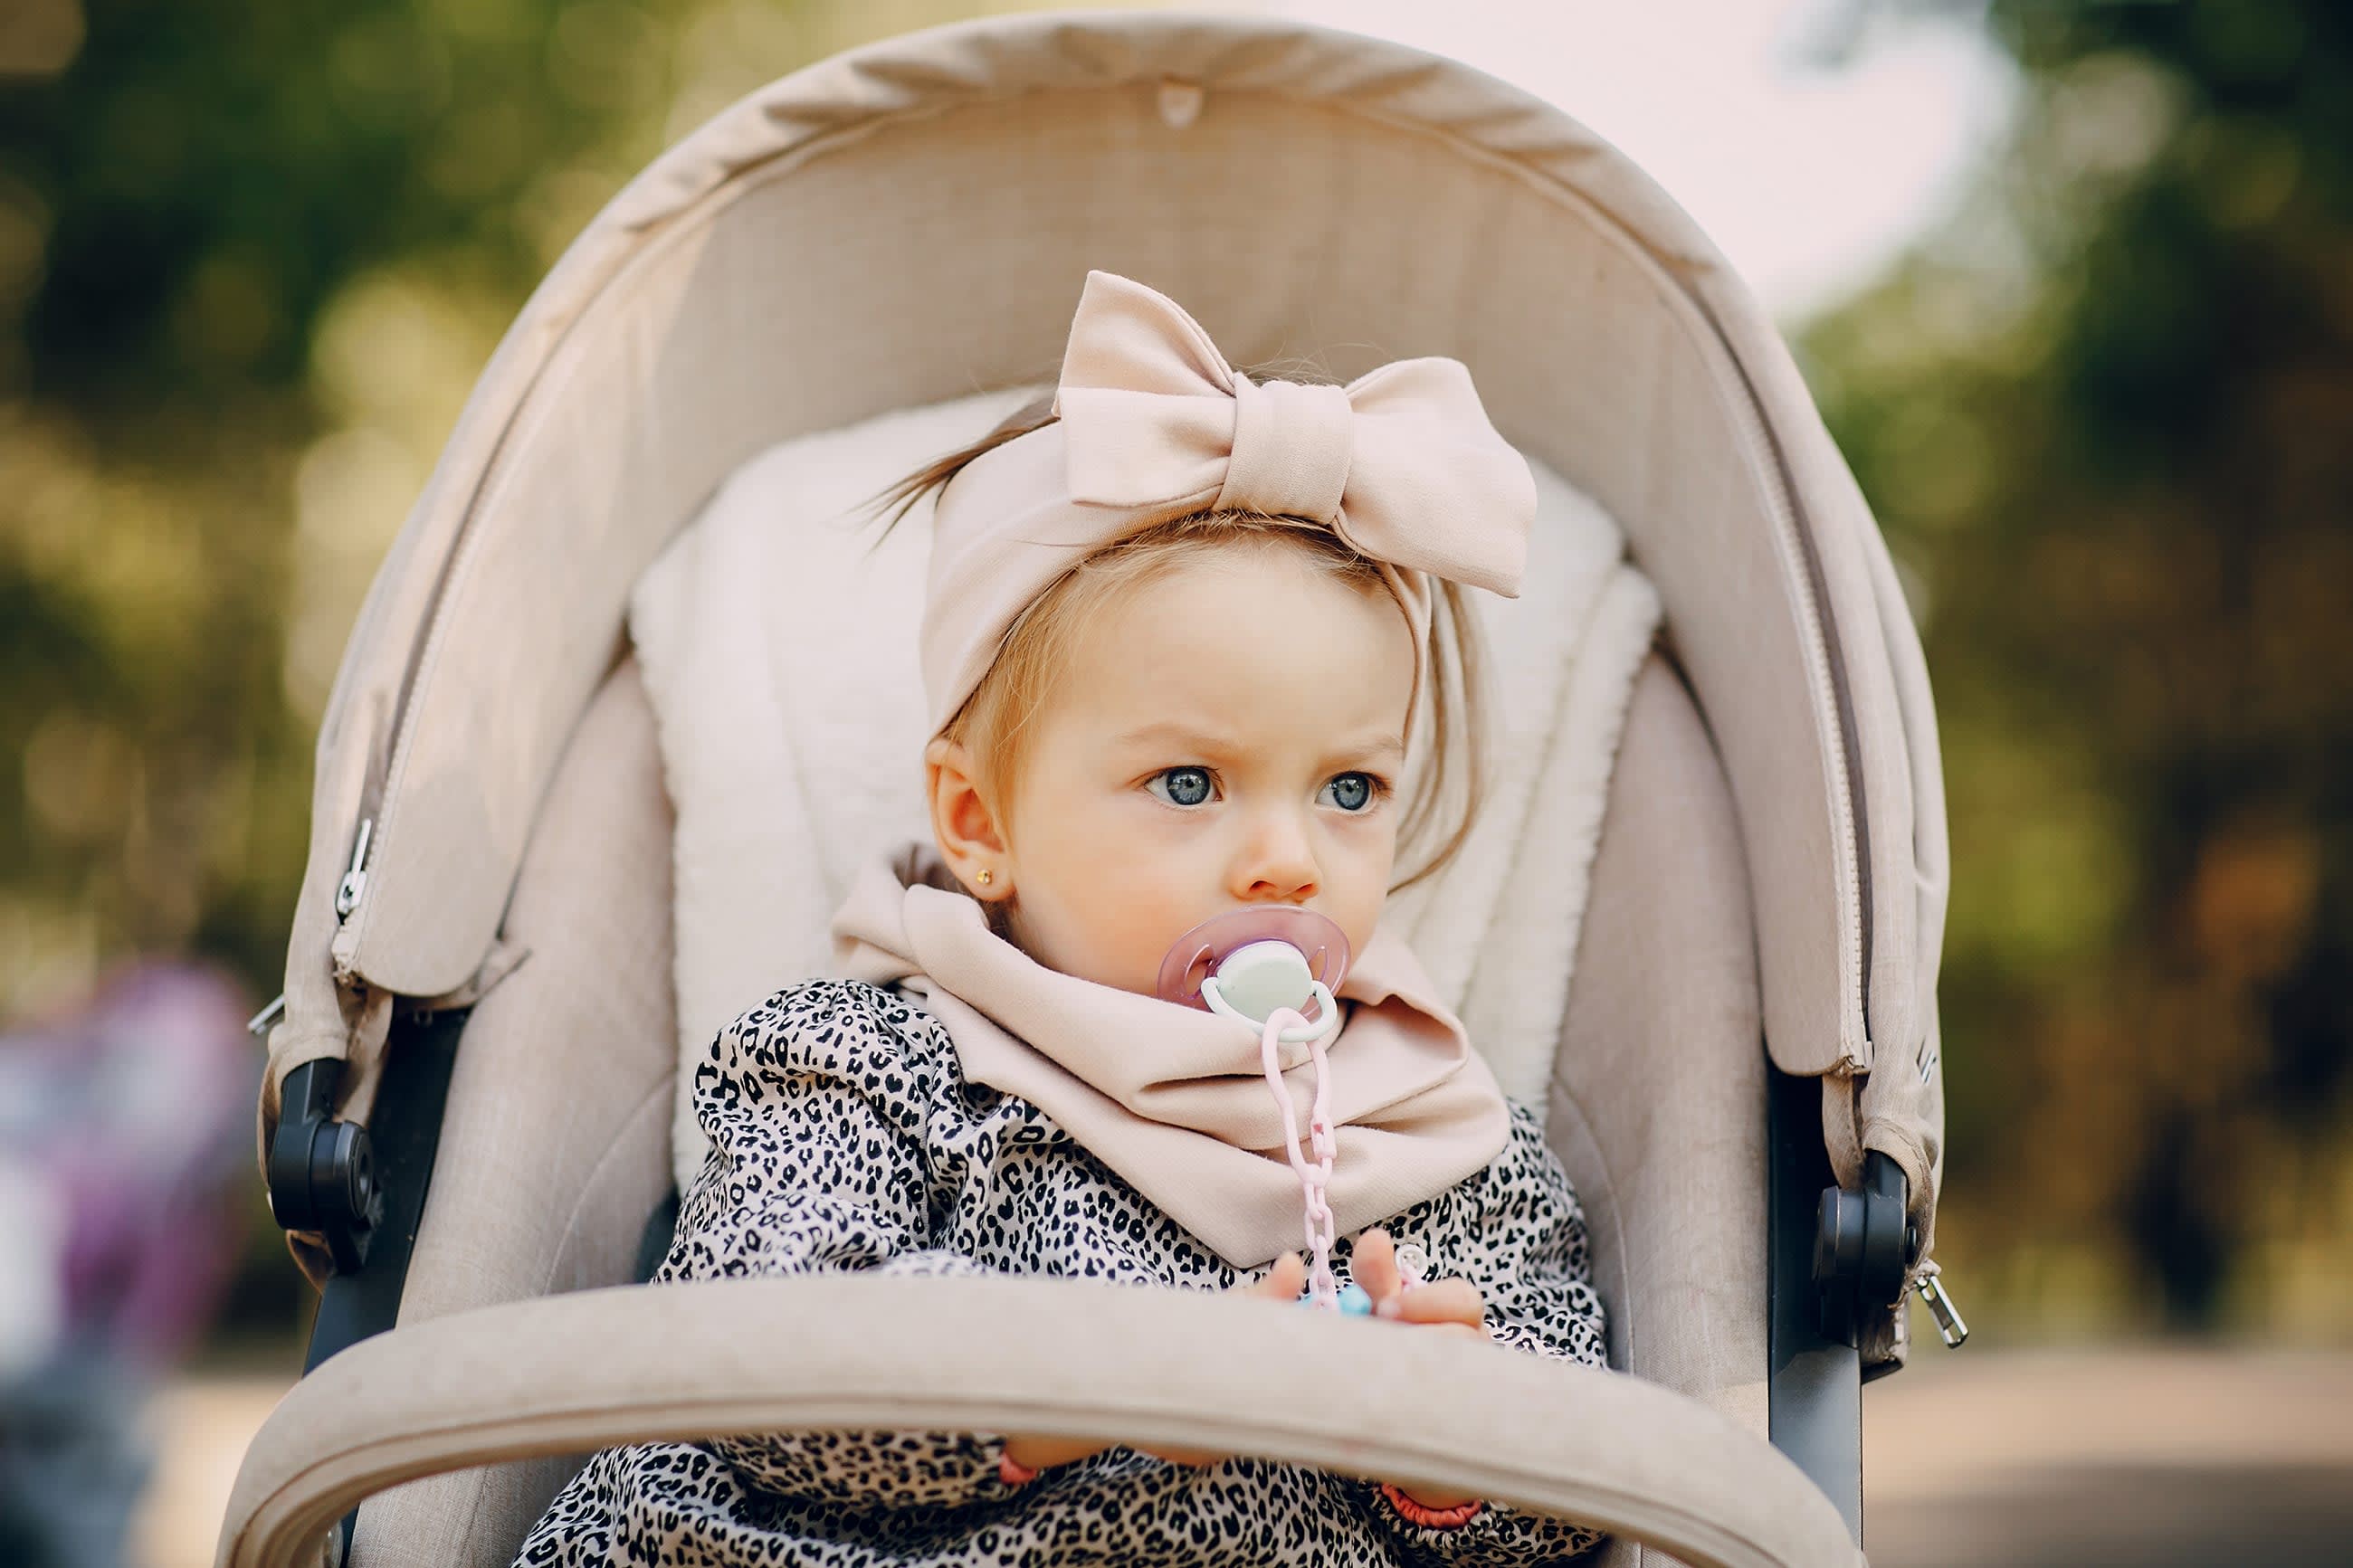 Patinetes para carritos de bebé - El blog de mi bebe